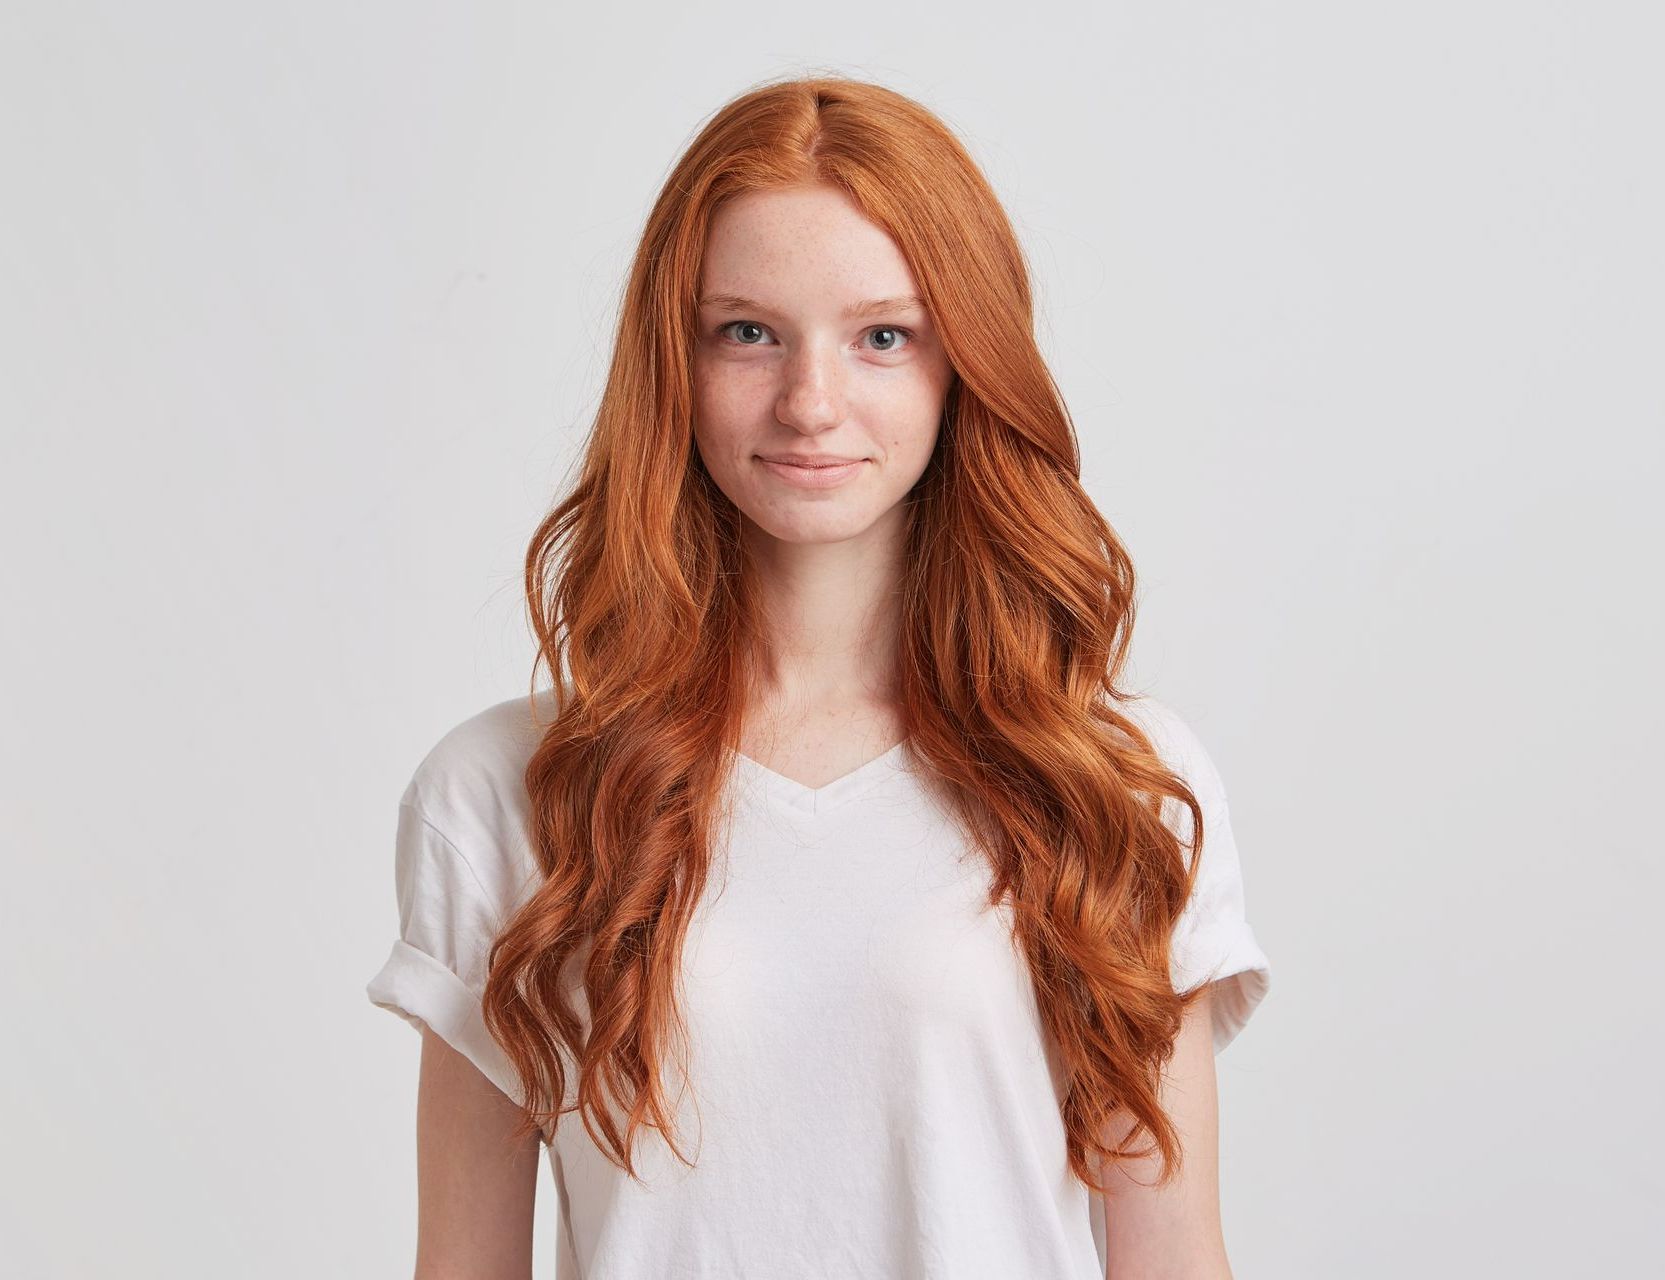 Eine junge Frau mit langen roten Haaren trägt ein weißes T-Shirt.